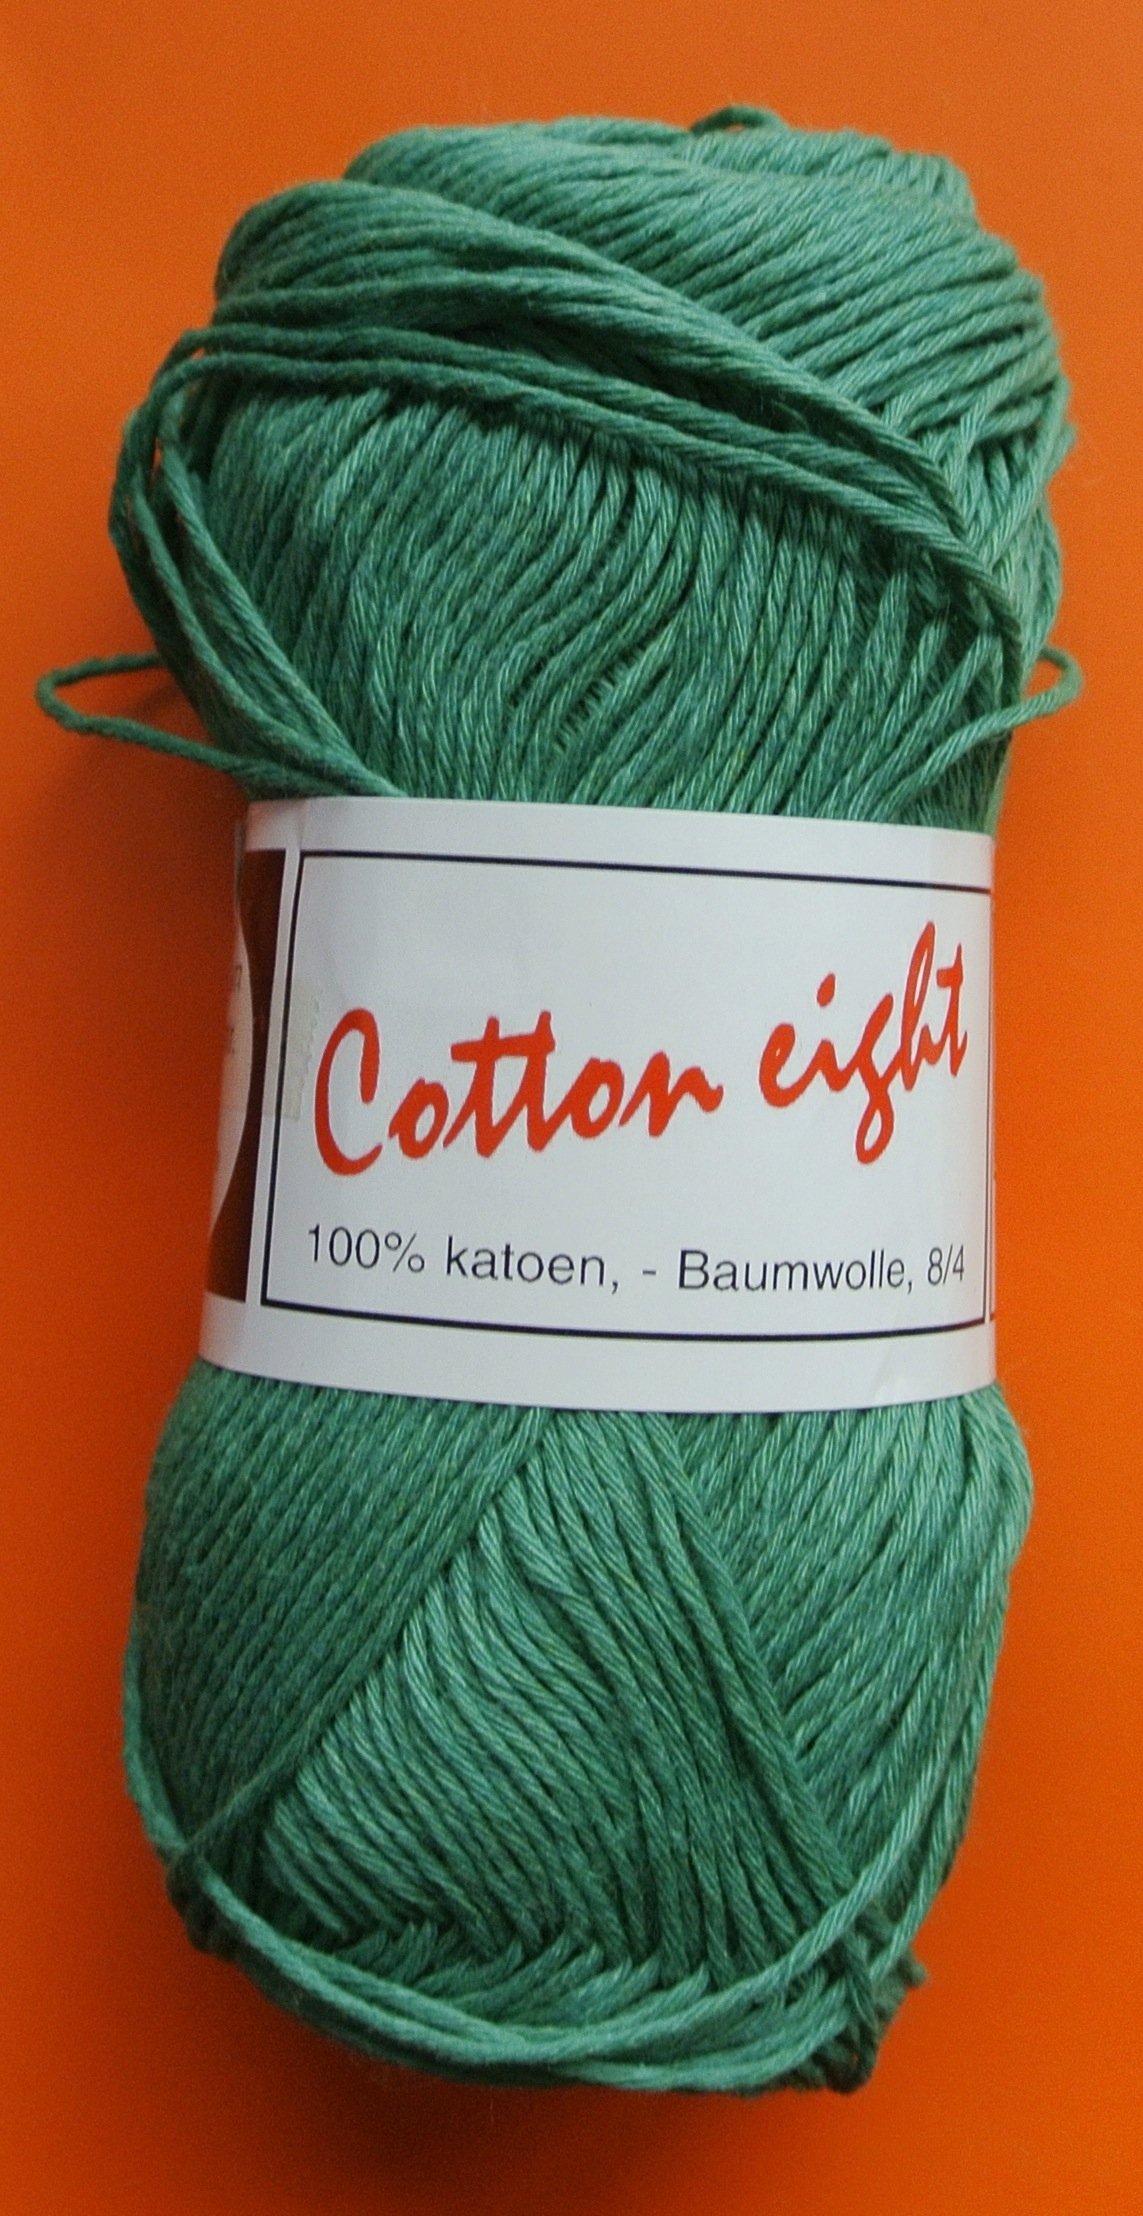 dun katoengaren Cotton groen - pendikte 2,5-3mm